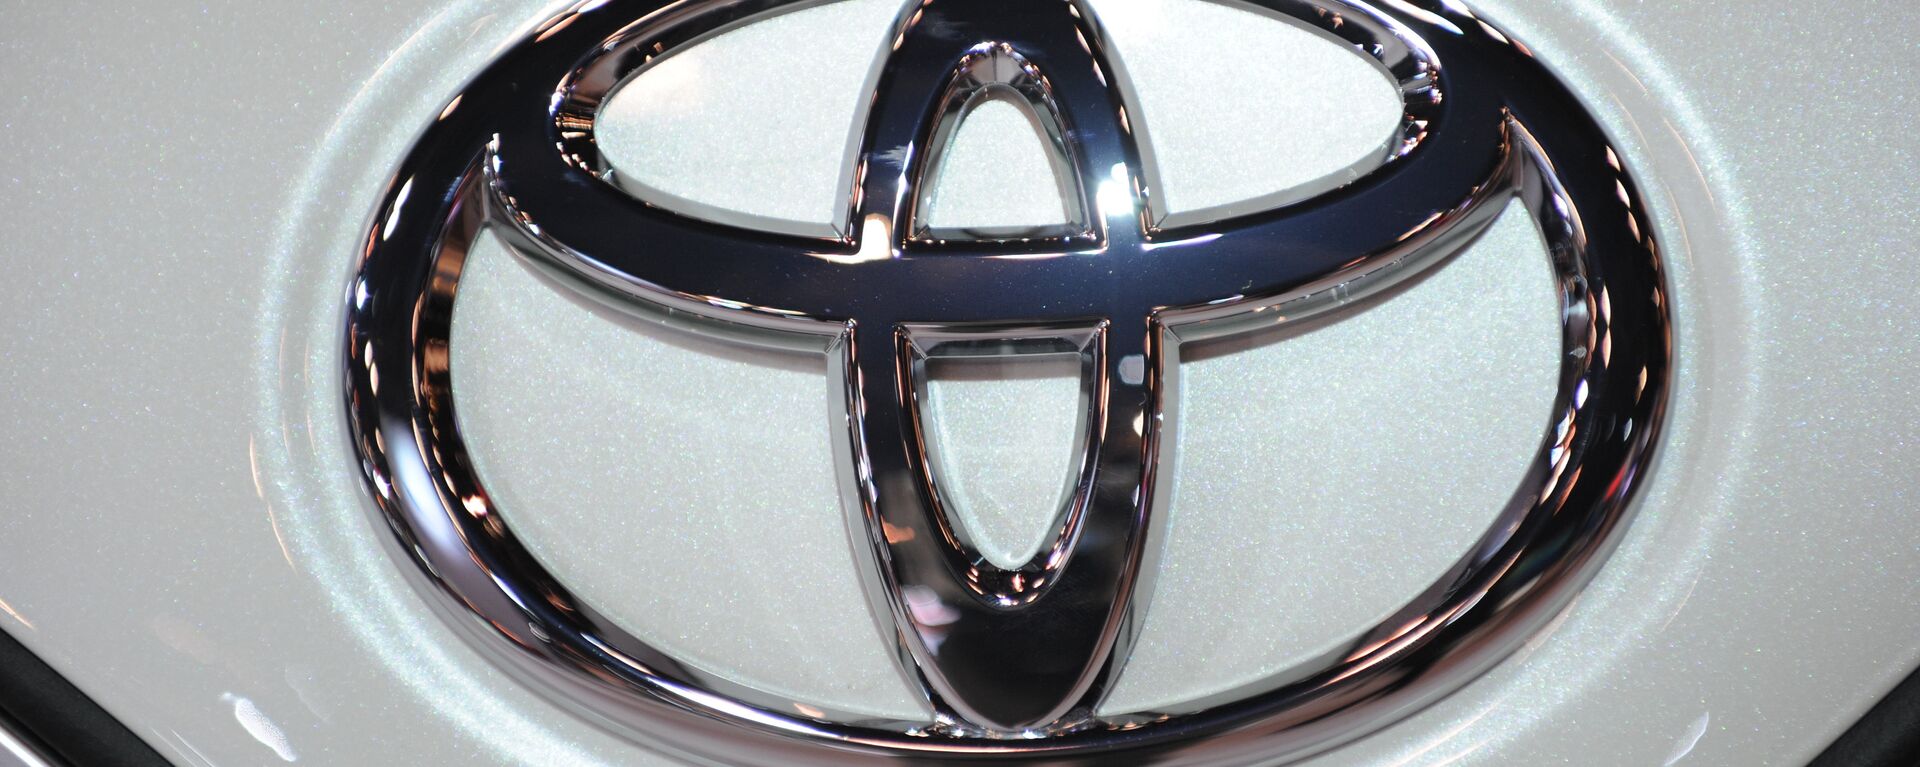 Toyota Motor отзывает по всему миру более 1 млн автомобилей Avensis - Sputnik Mundo, 1920, 16.01.2020